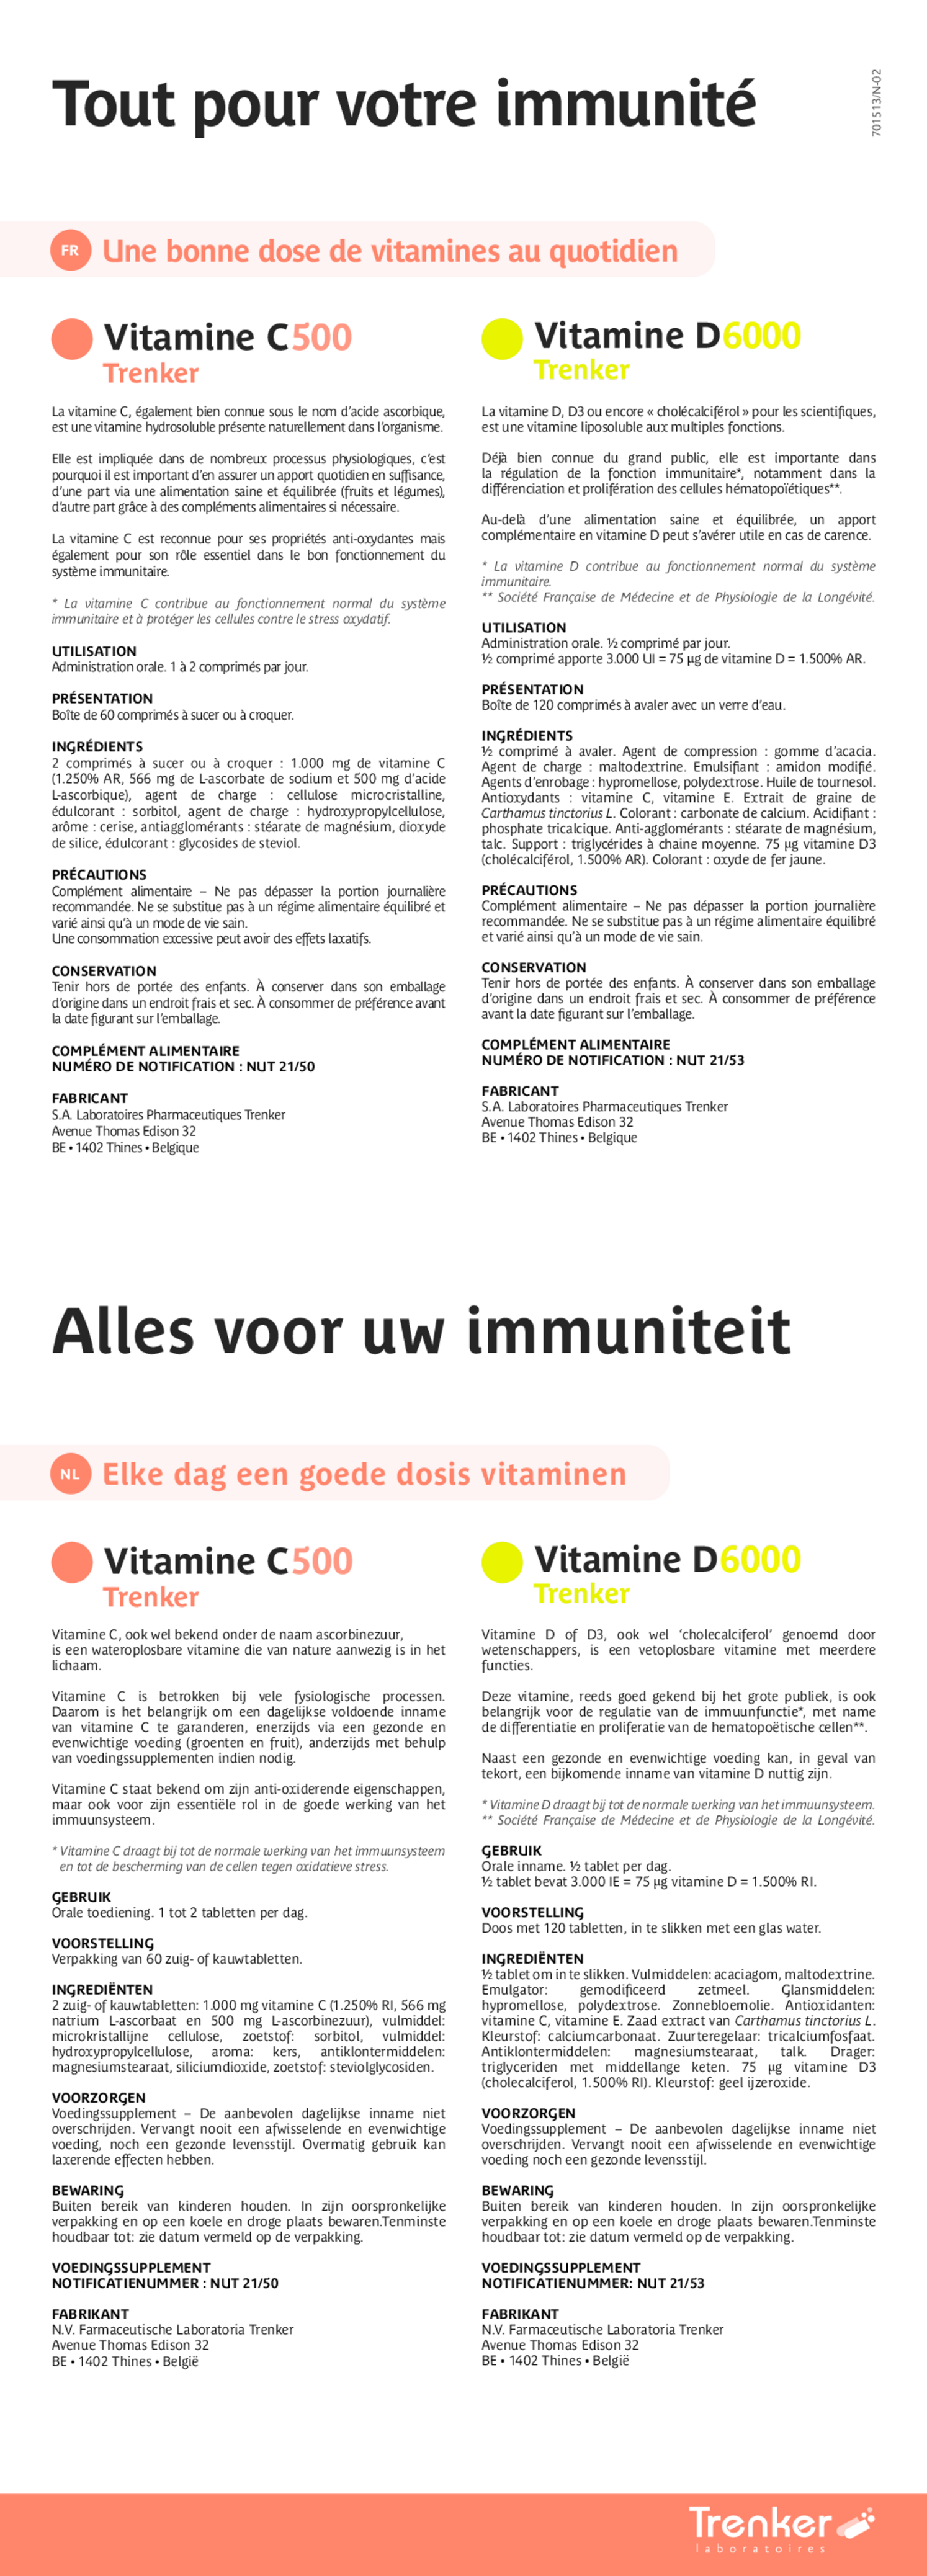 Vitamine D6000 afbeelding van document #1, gebruiksaanwijzing